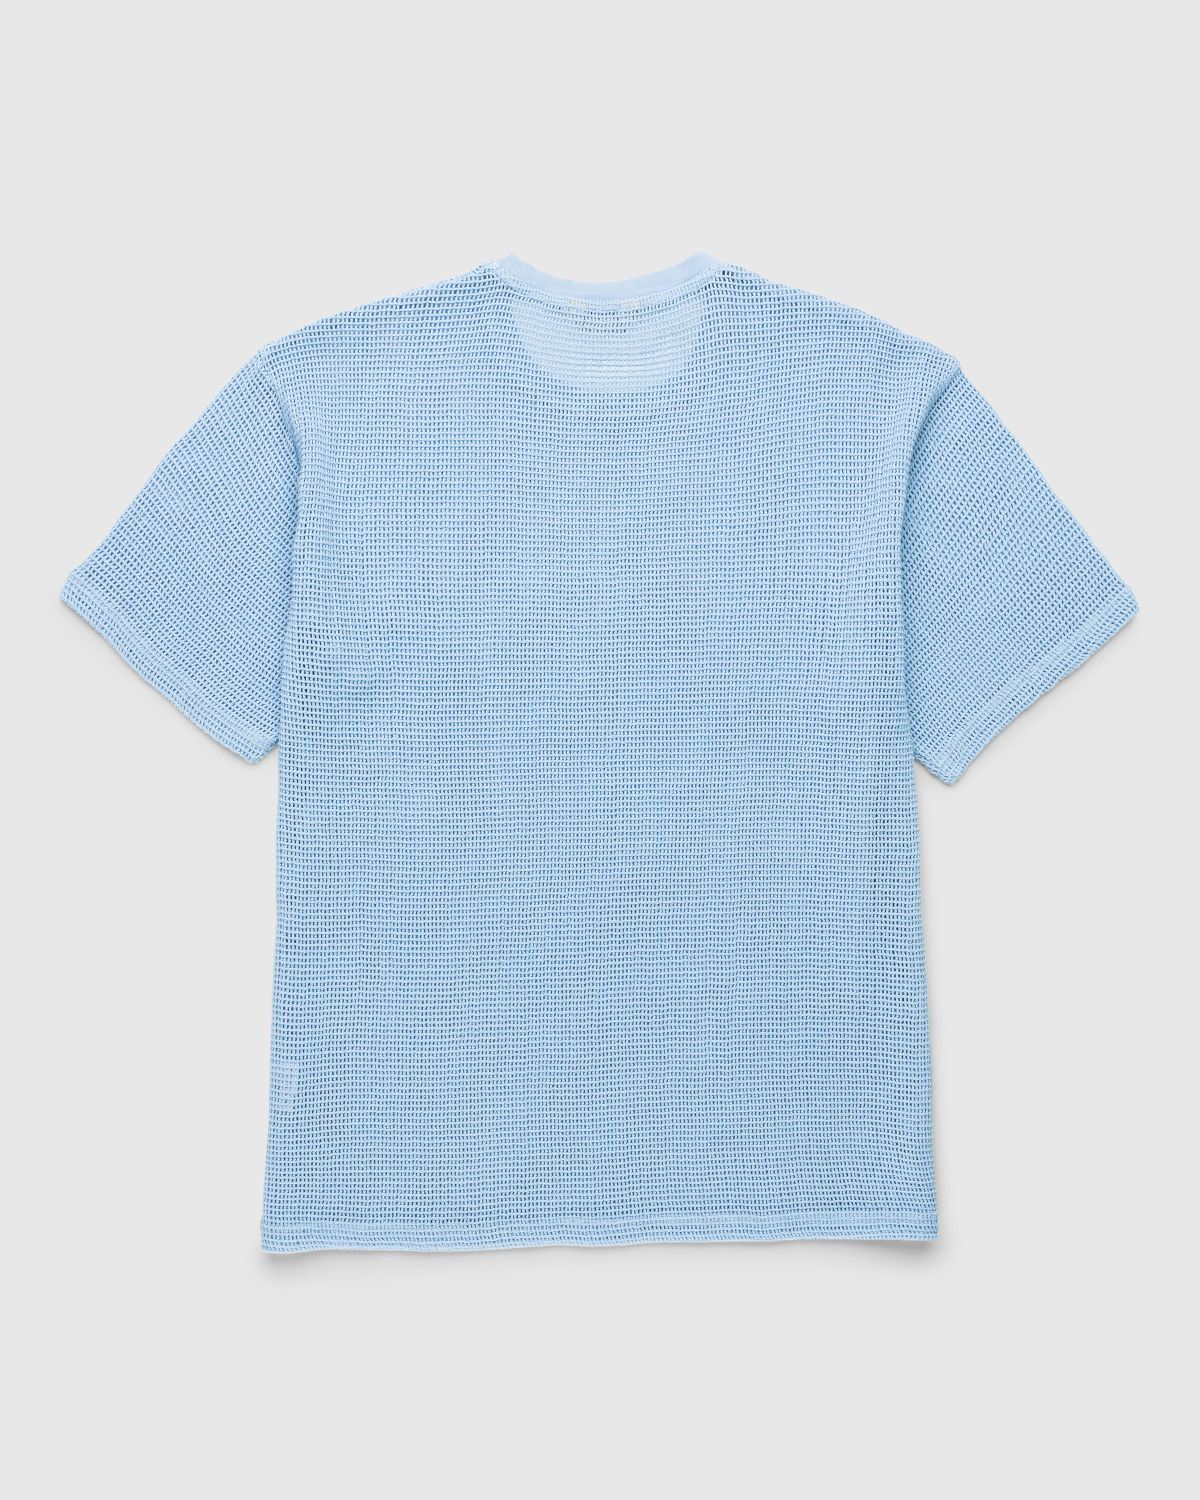 Highsnobiety – Cotton Mesh Knit T-Shirt Blue | Highsnobiety Shop